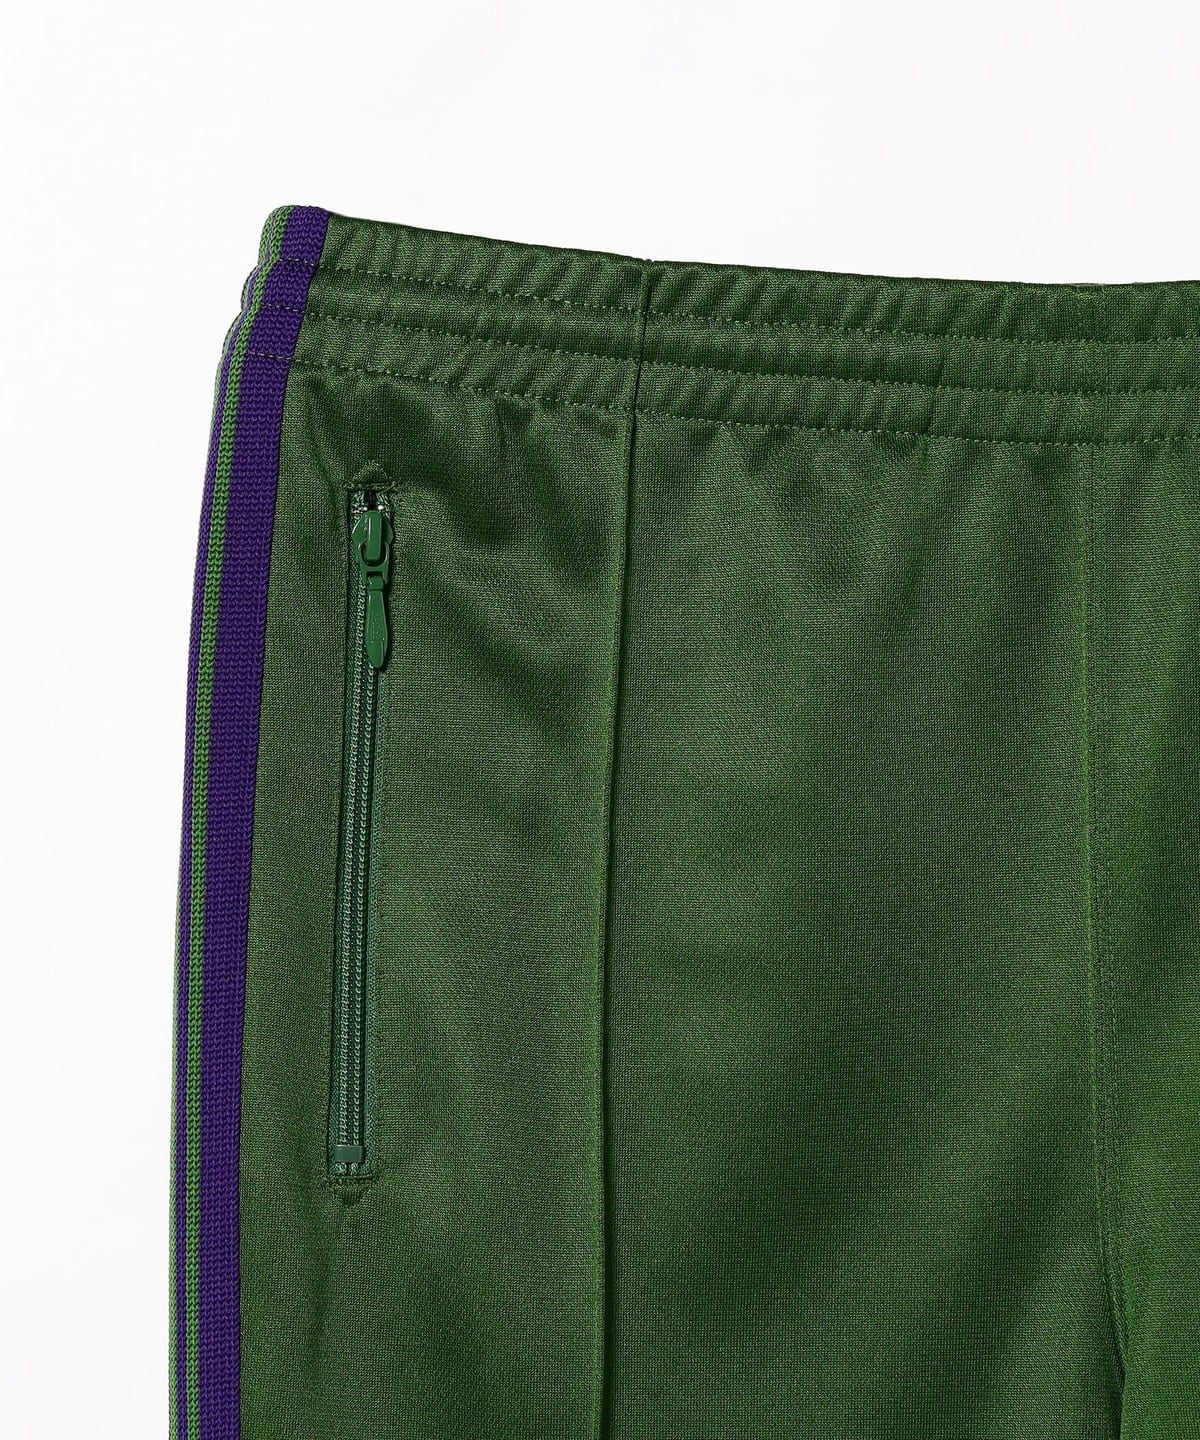 BEAMS BEAMS / NARROW TRACK PANT - POLY SMOOTH (NEEDLES pants) mail 